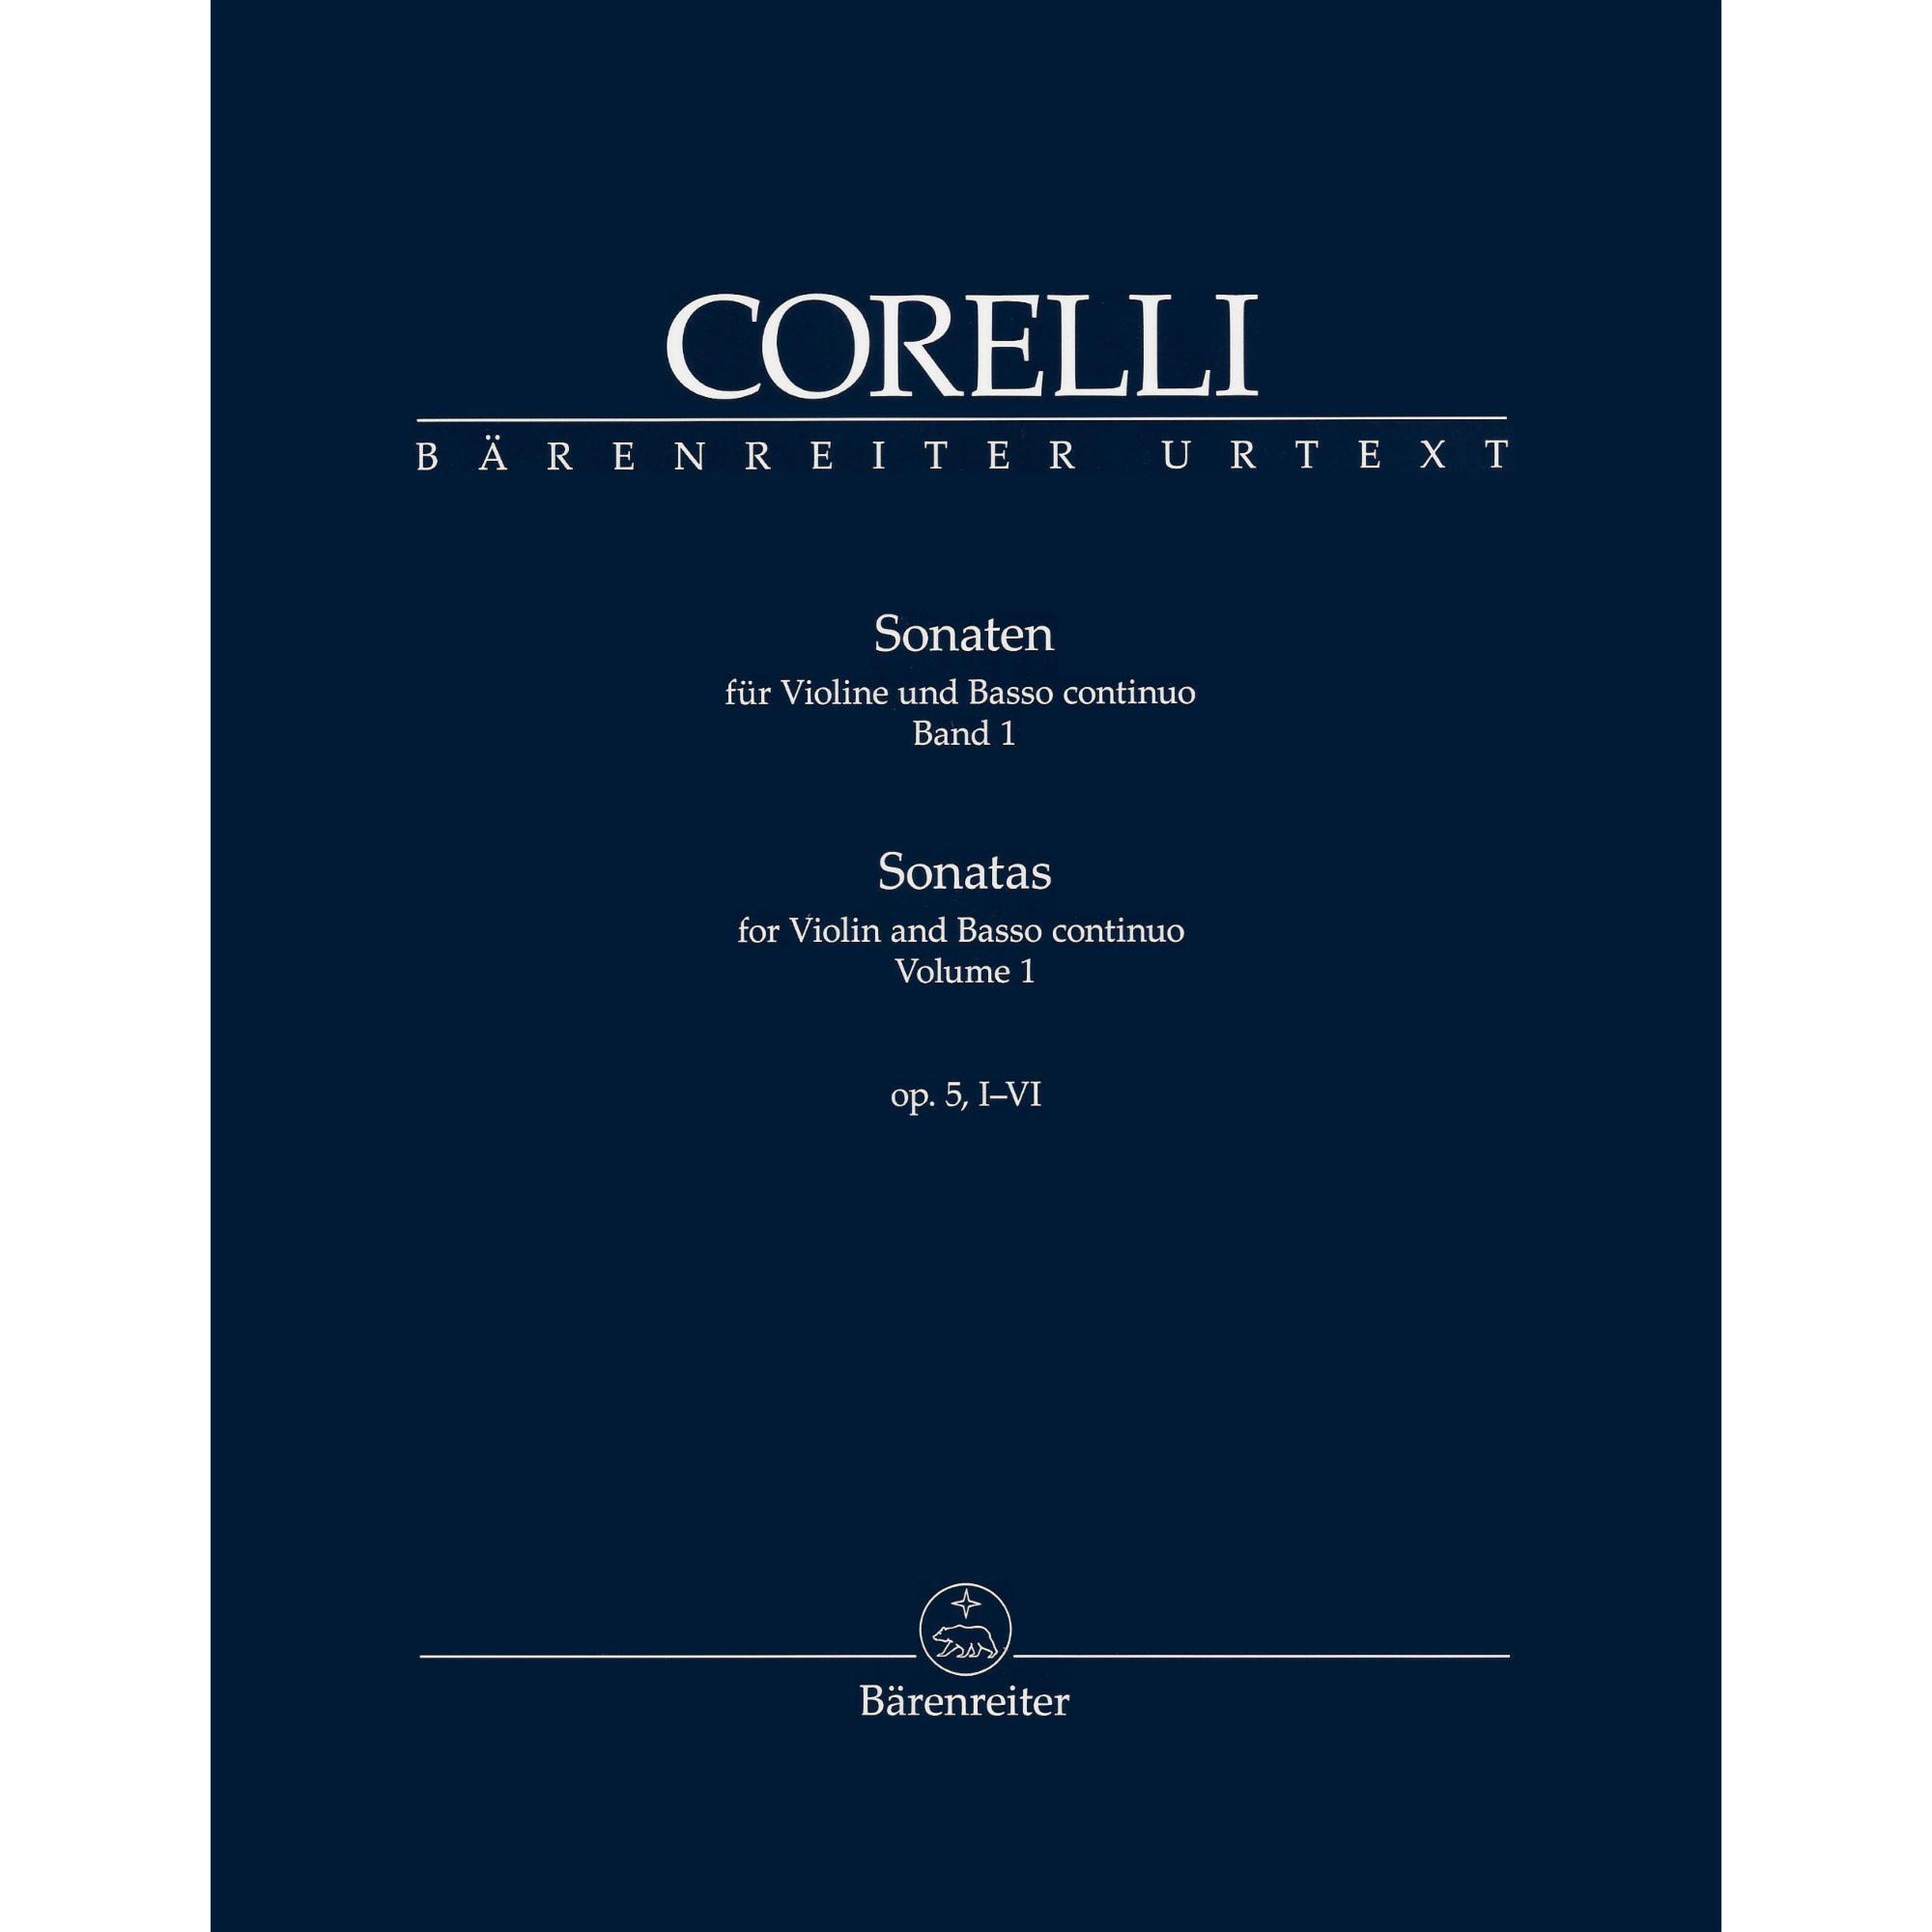 Corelli -- Sonatas, Op. 5, Vols. 1 & 2 for Violin and Basso Continuo